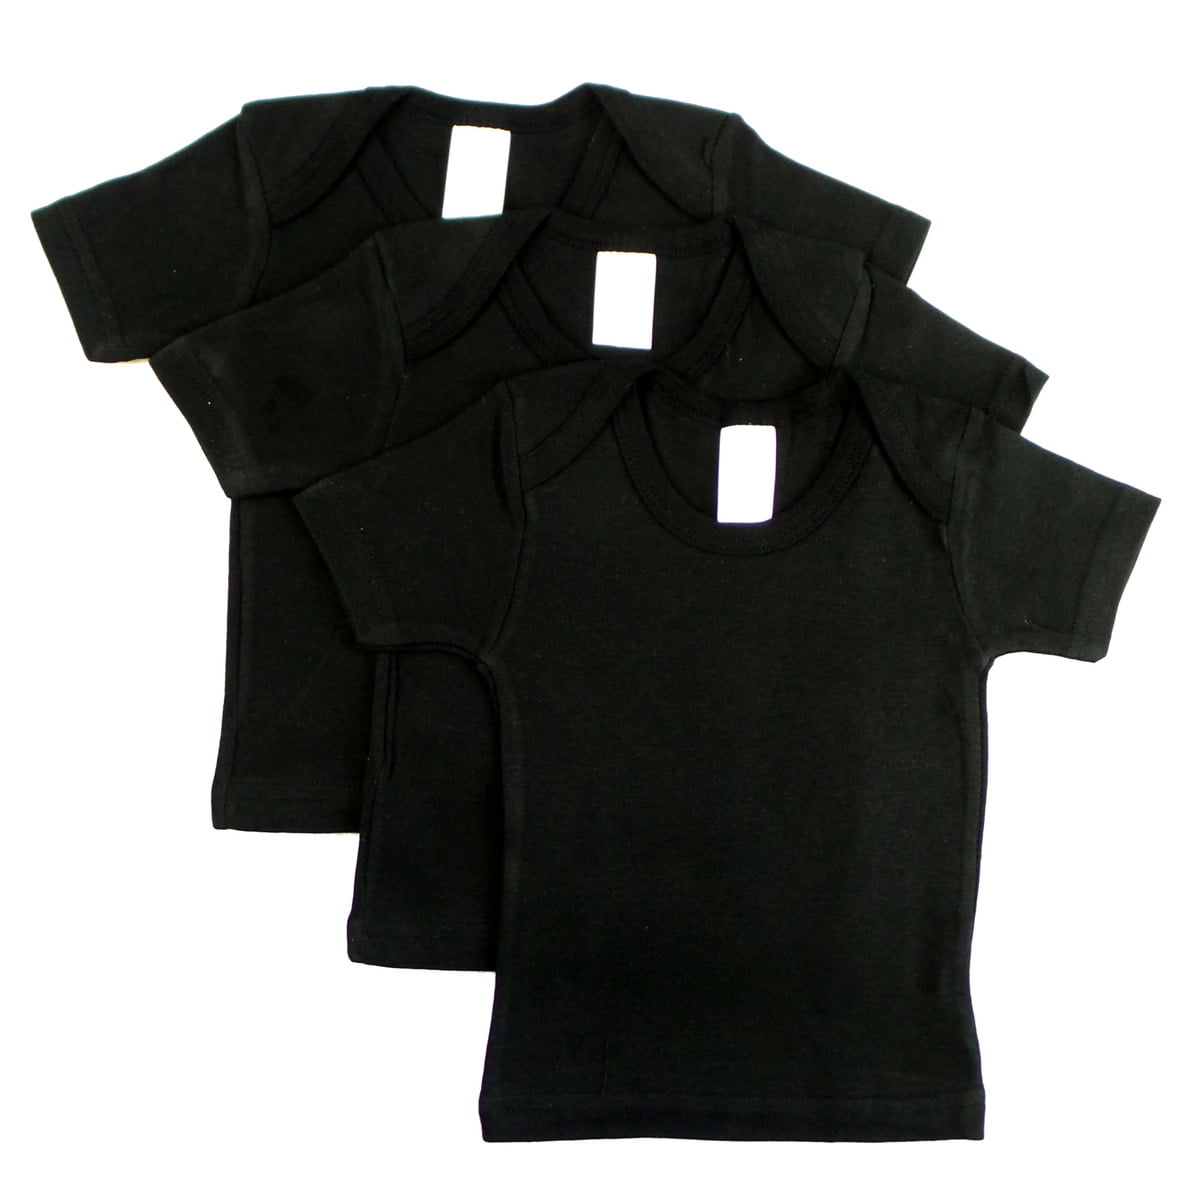 Short Sleeve Lap Shirt, Black - Size 18 To 24